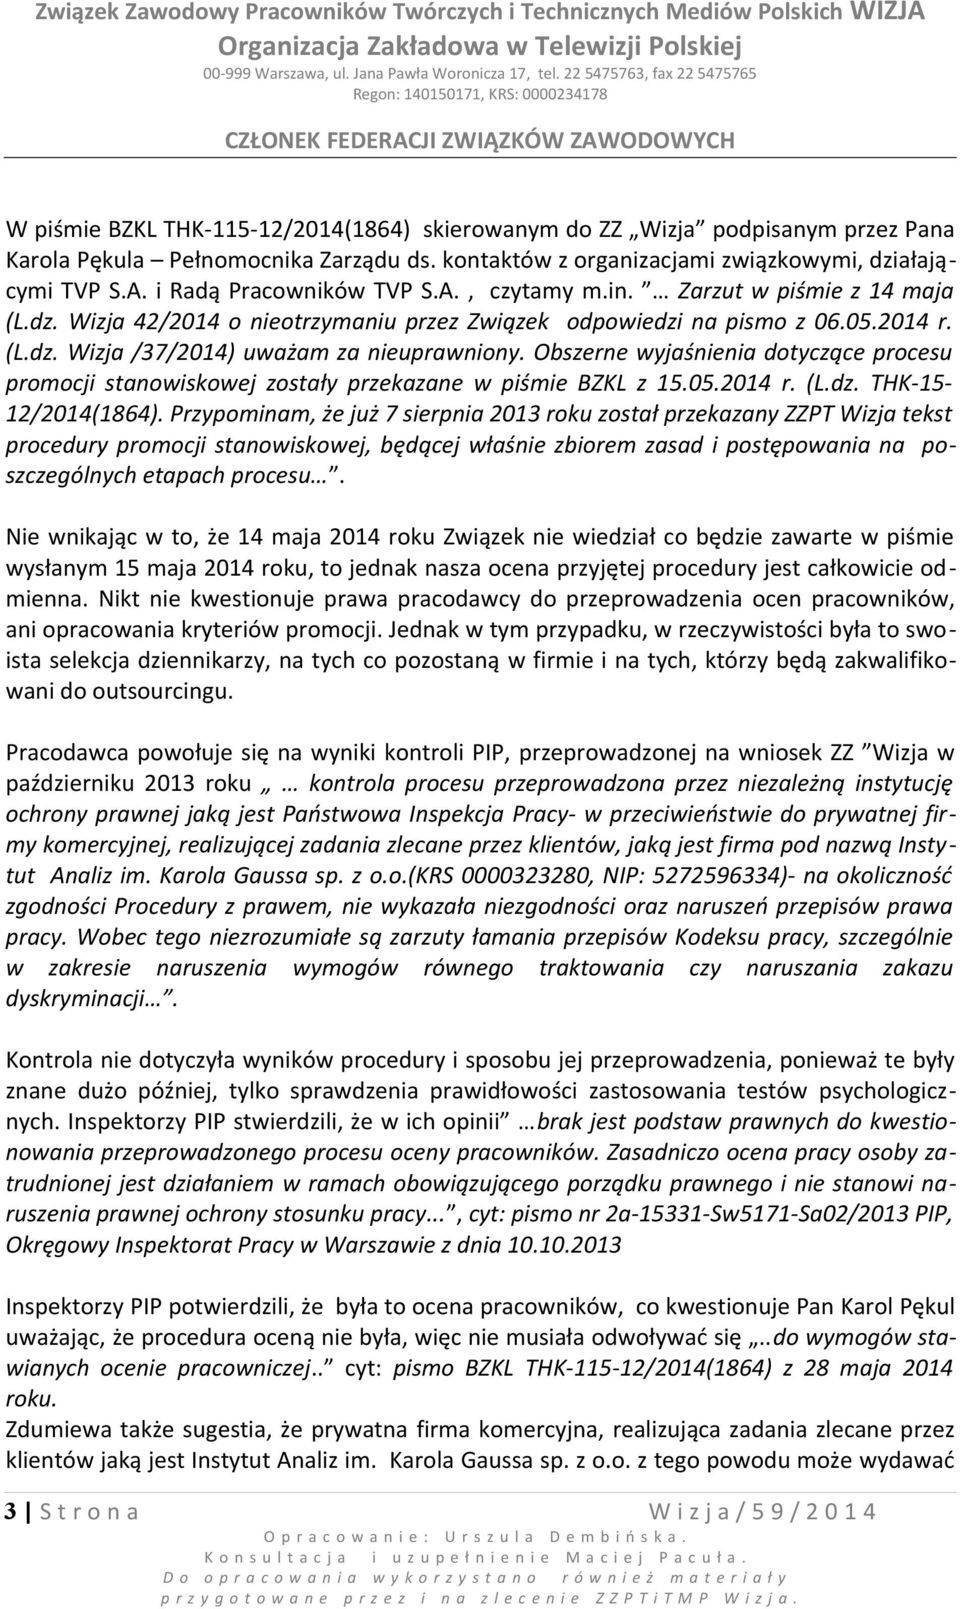 Obszerne wyjaśnienia dotyczące procesu promocji stanowiskowej zostały przekazane w piśmie BZKL z 15.05.2014 r. (L.dz. THK-15-12/2014(1864).